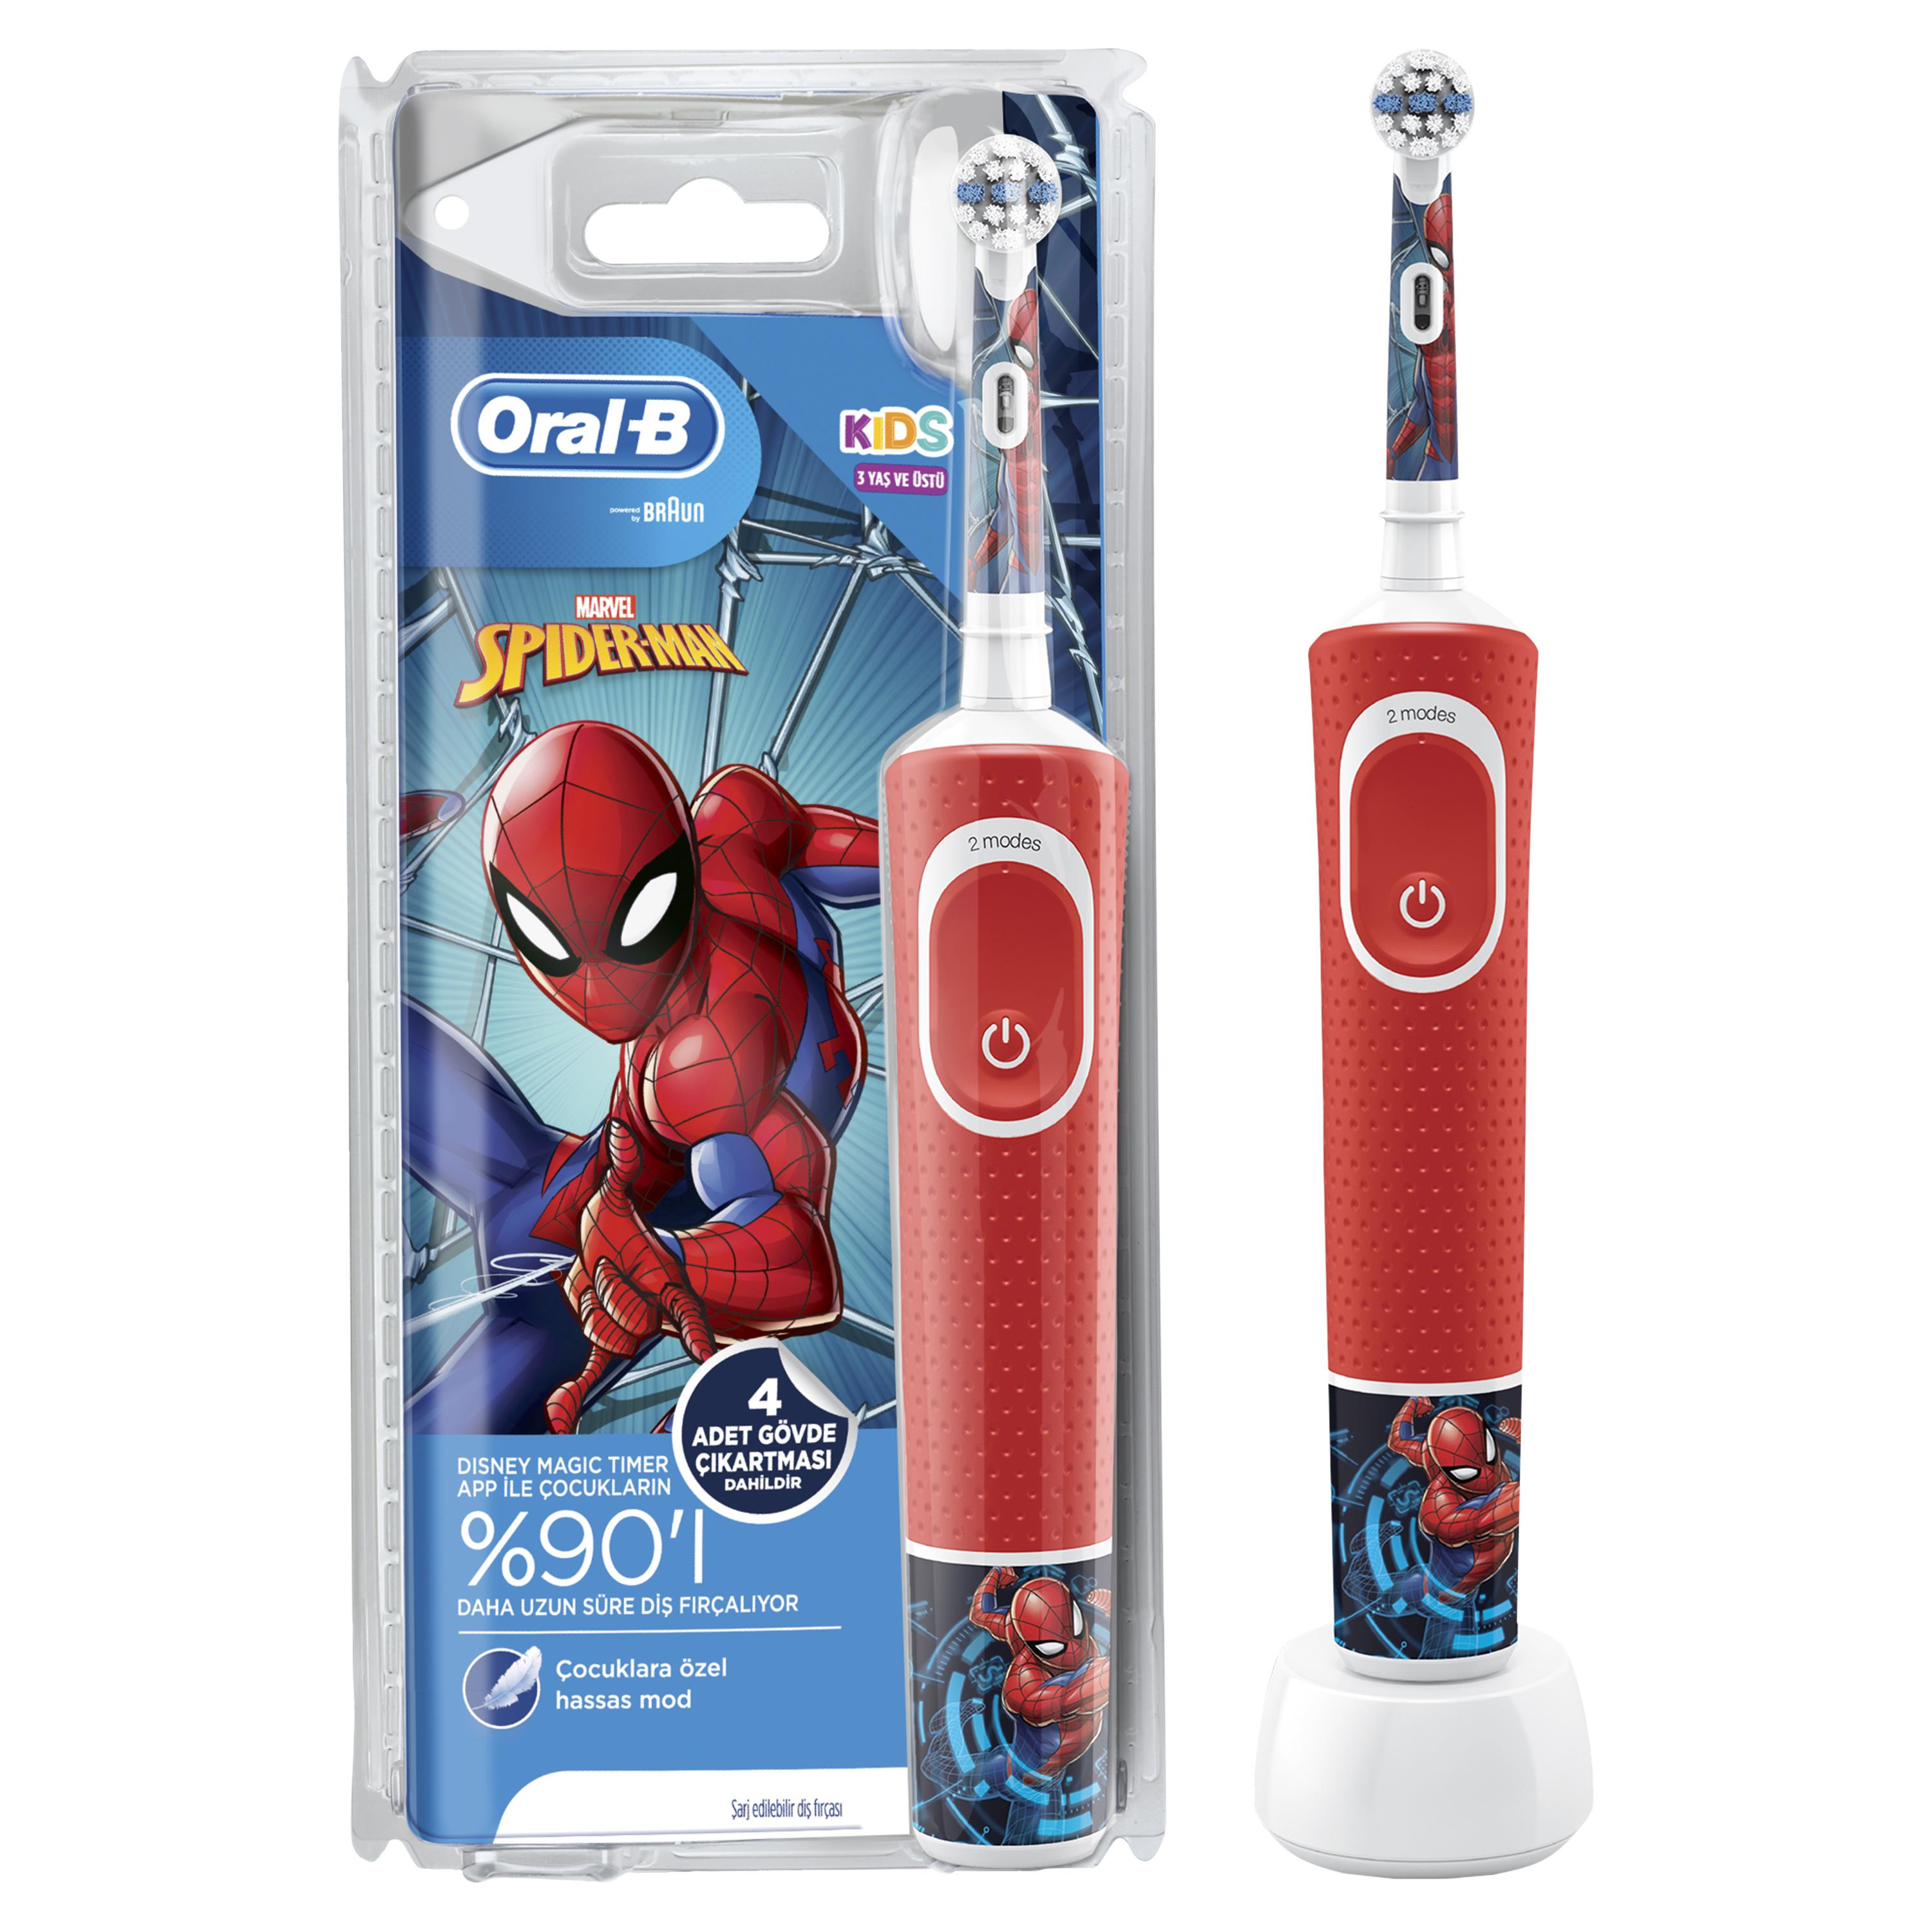 Oral-B D100 Vitality Spiderman Özel Seri Çocuklar İçin Şarj Edilebilir Diş Fırçası